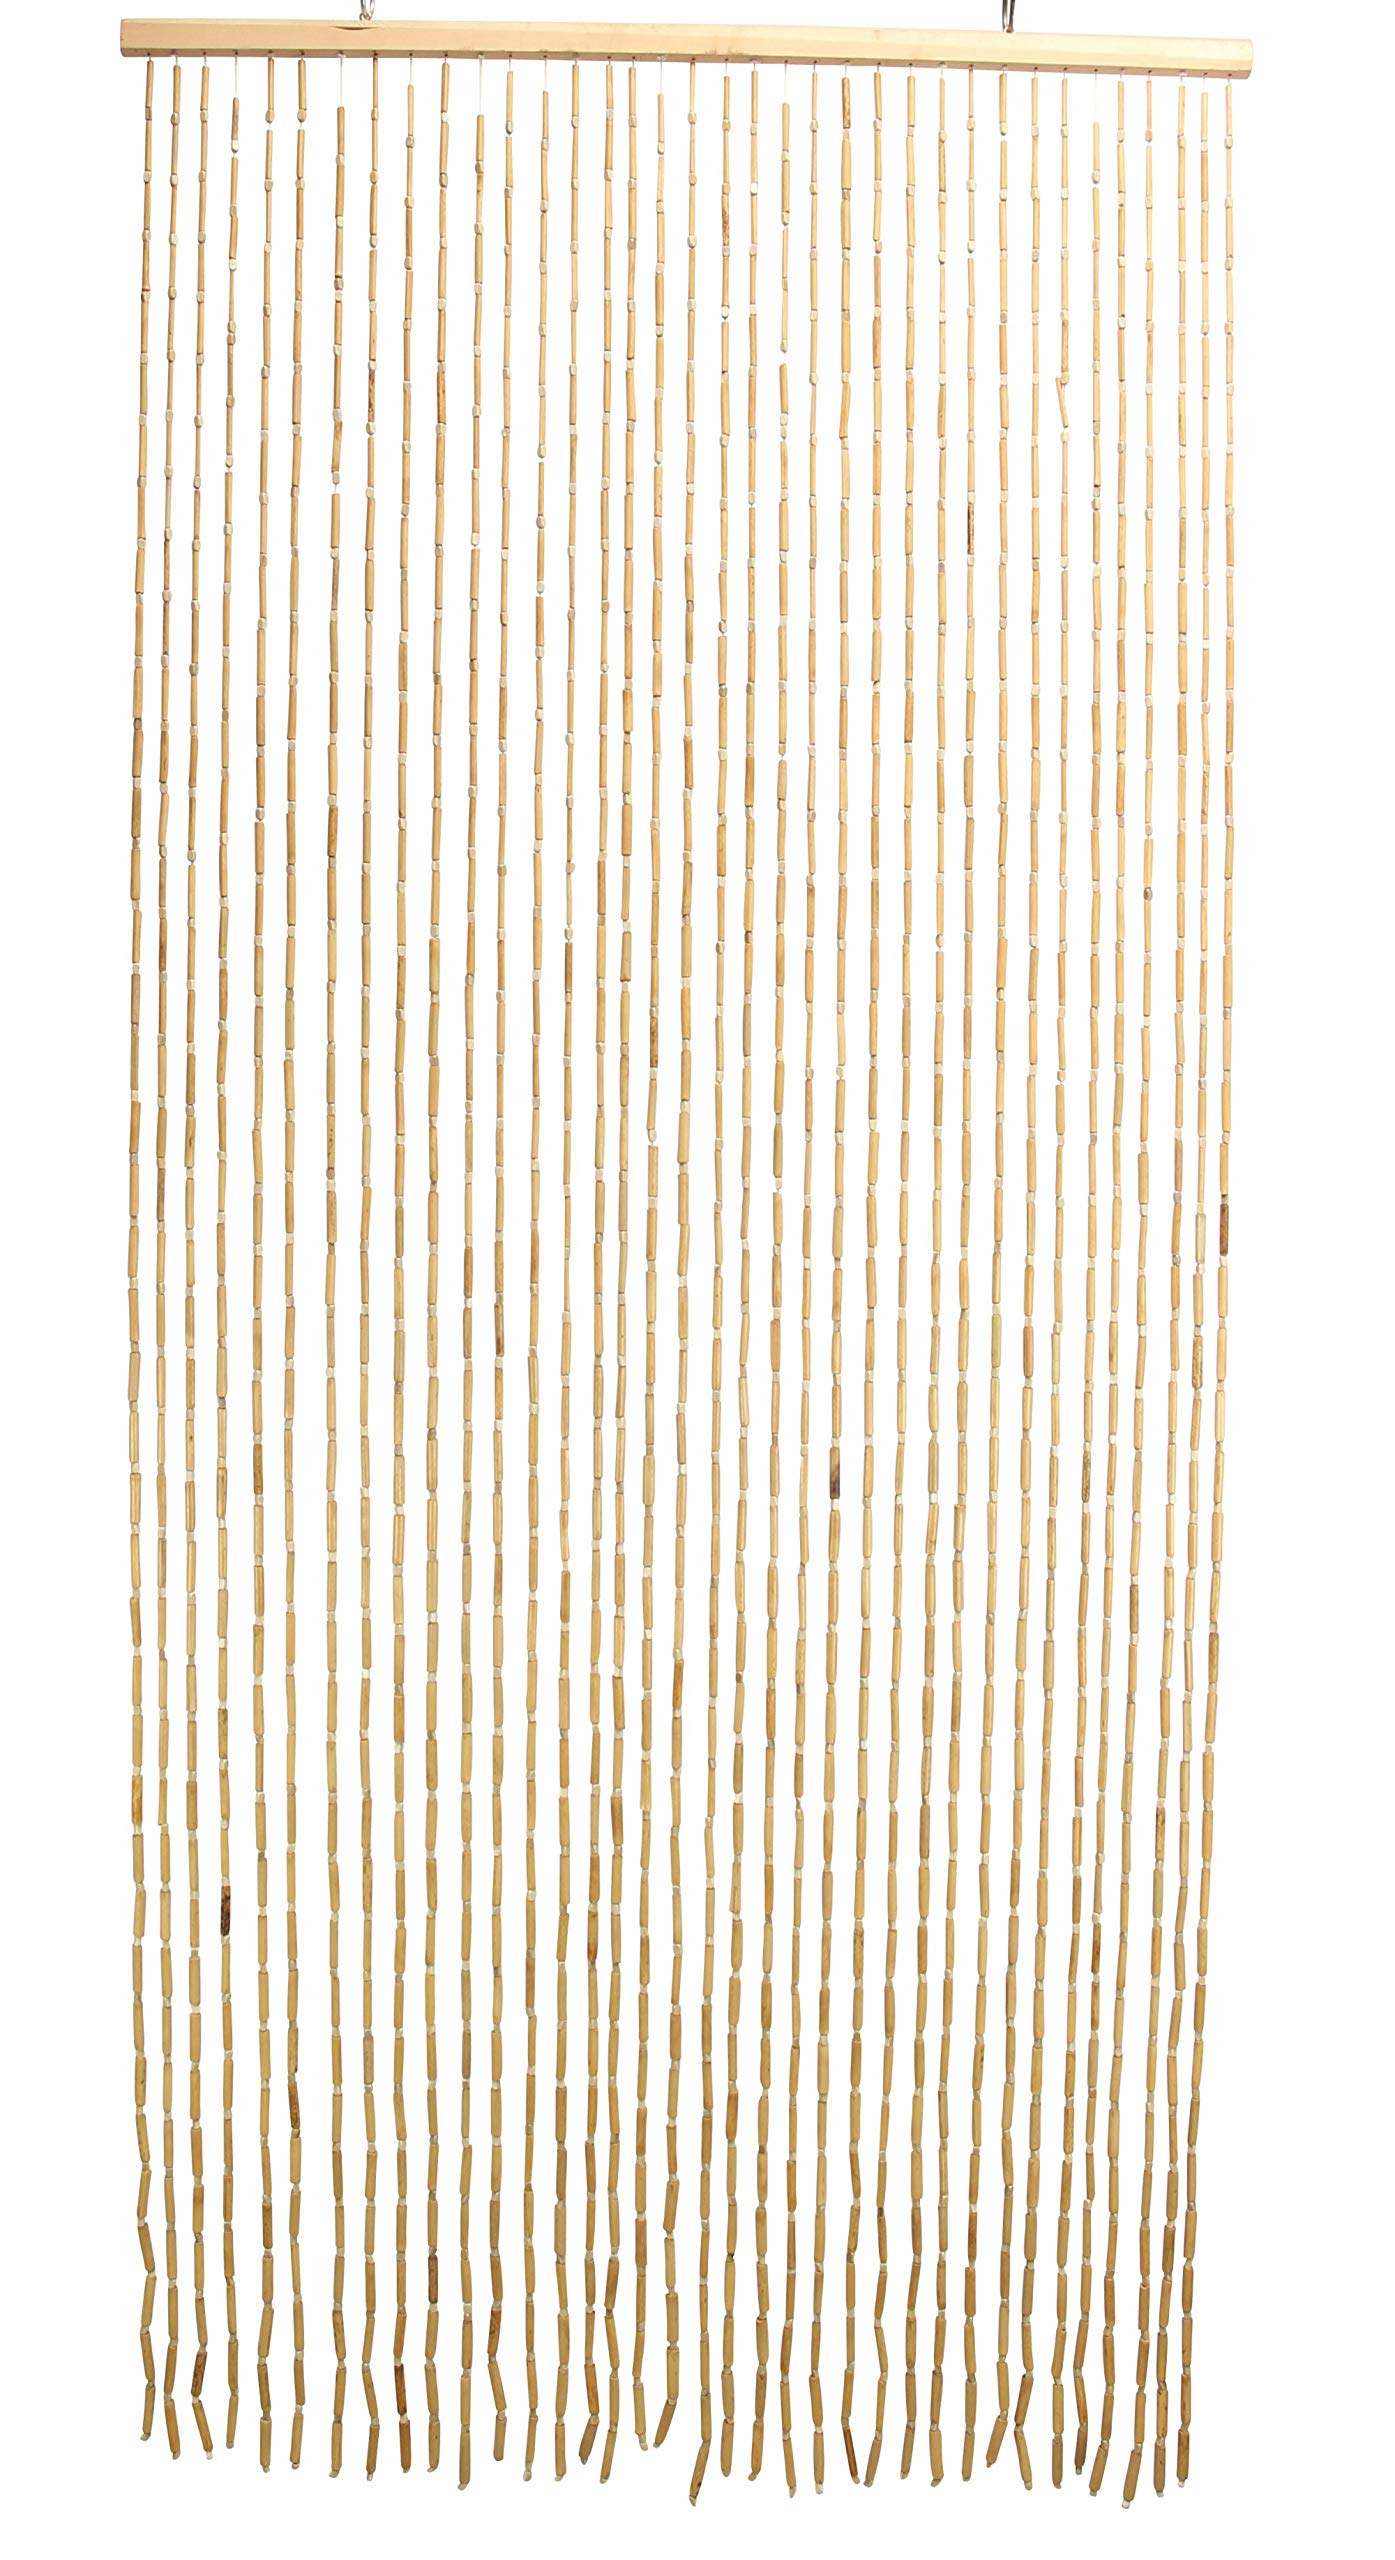 FRANK FLECHTWAREN Fadenvorhang Bambus, Vorhang, Türvorhang, Bambusvorhang Tropical, Raumtrenner GH 200 cm, Breite 90 cm